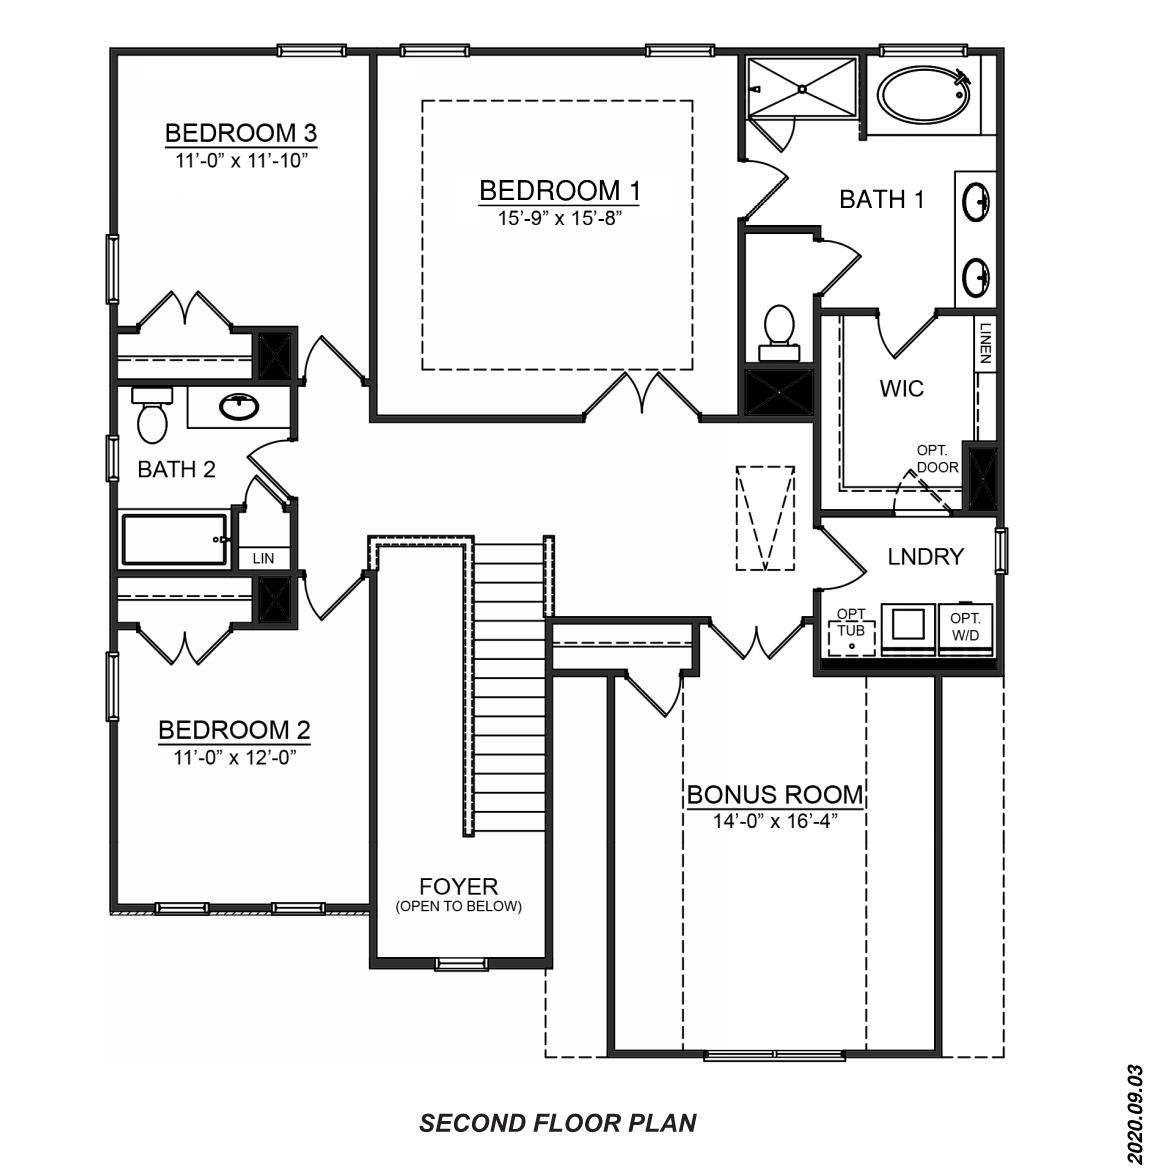 Fleetwood second floor plan